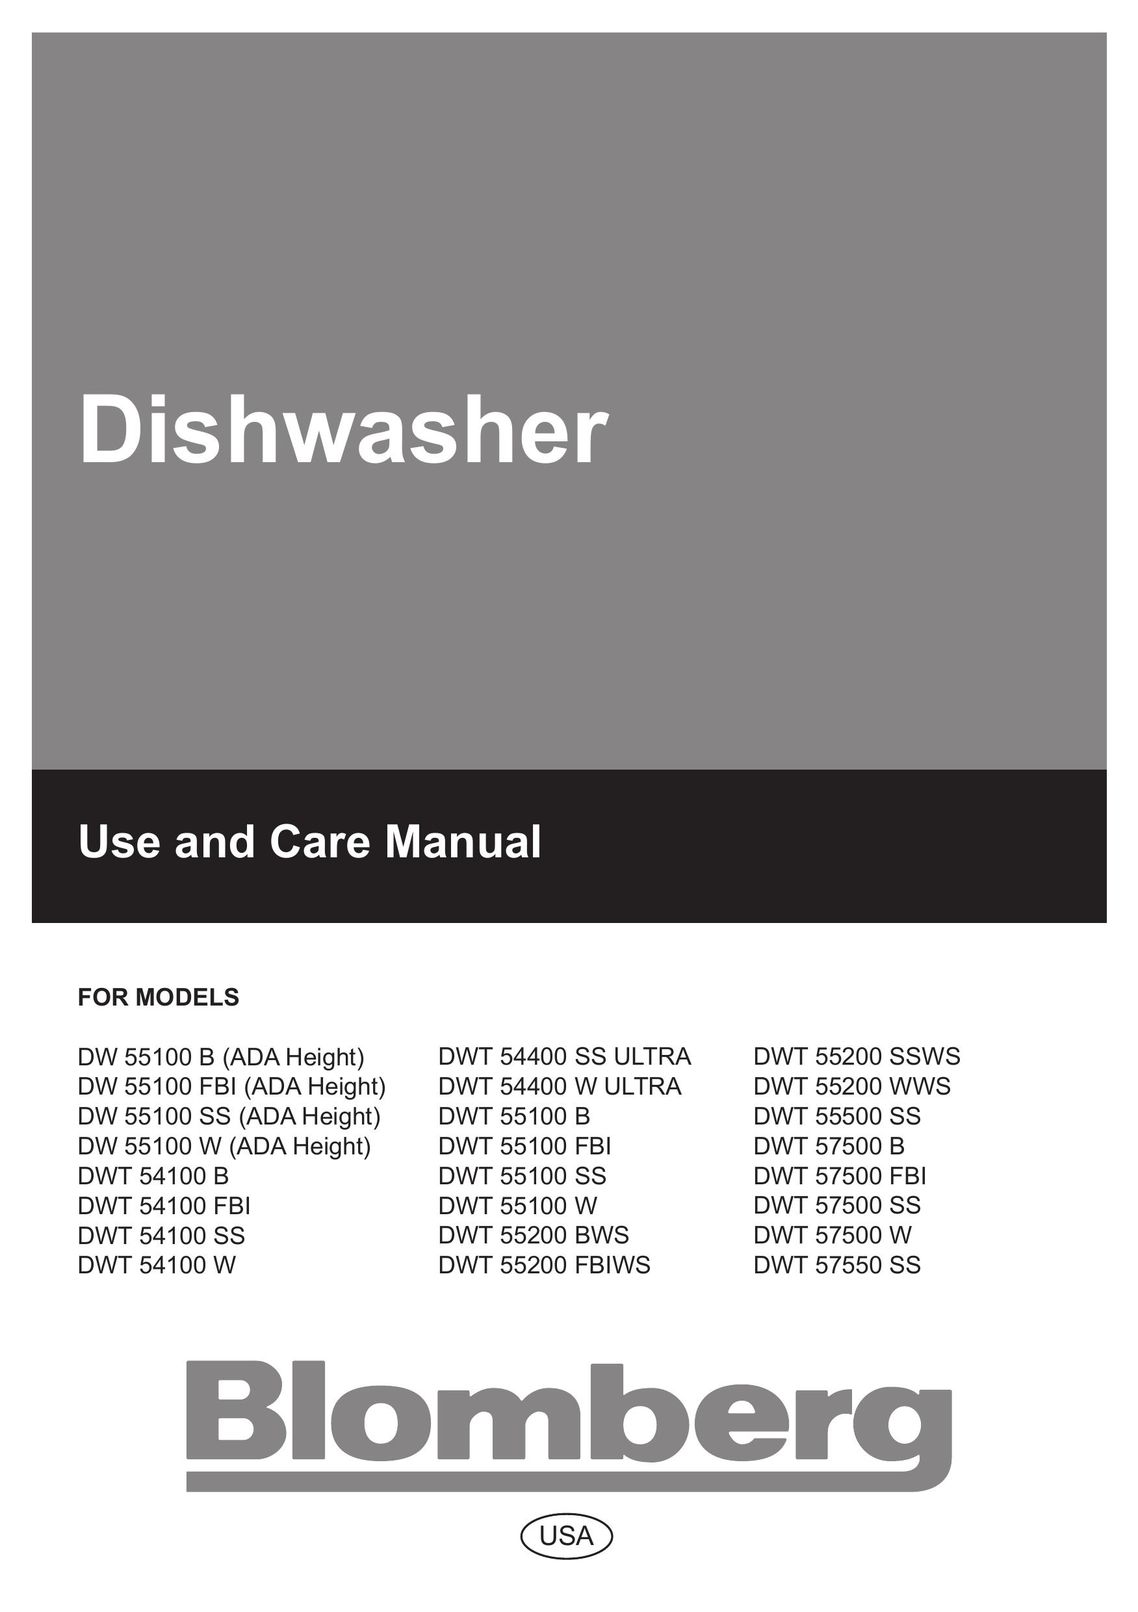 Blomberg DW 57500 FBI Dishwasher User Manual